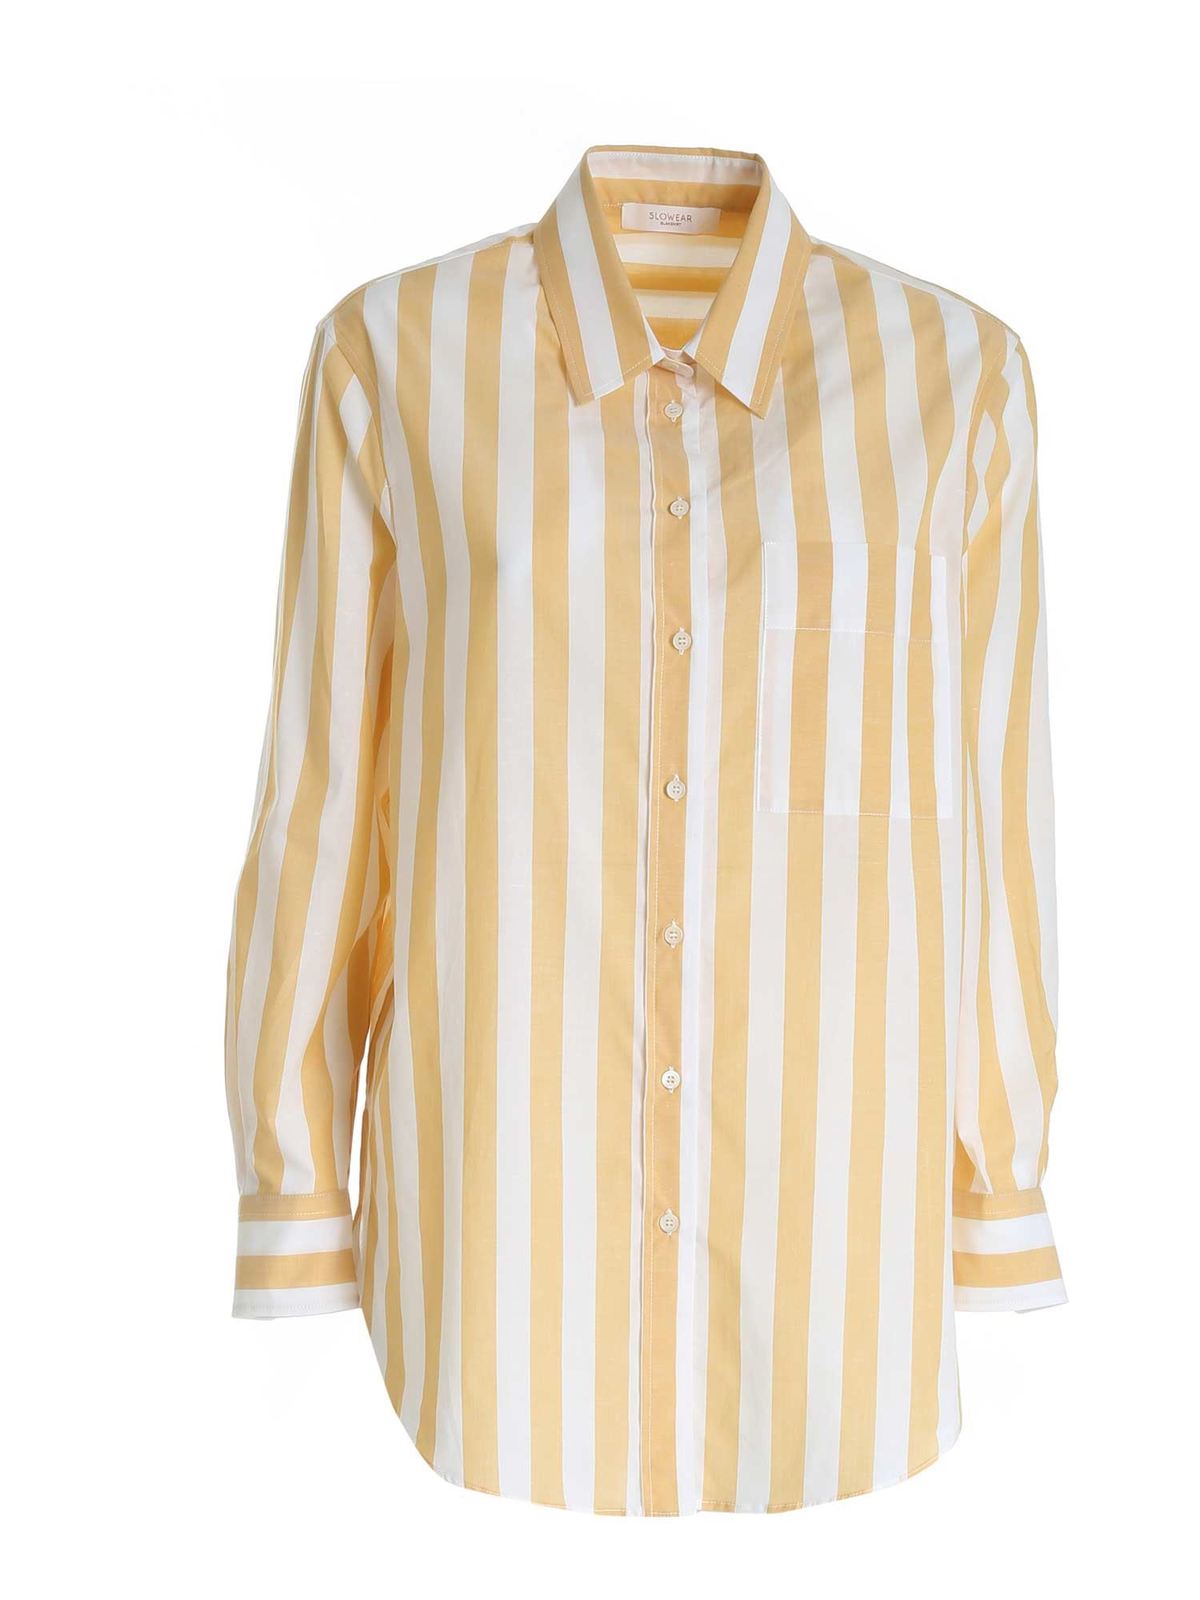 Shirts Glanshirt - Striped shirt in yellow and white - HAPISL6558310